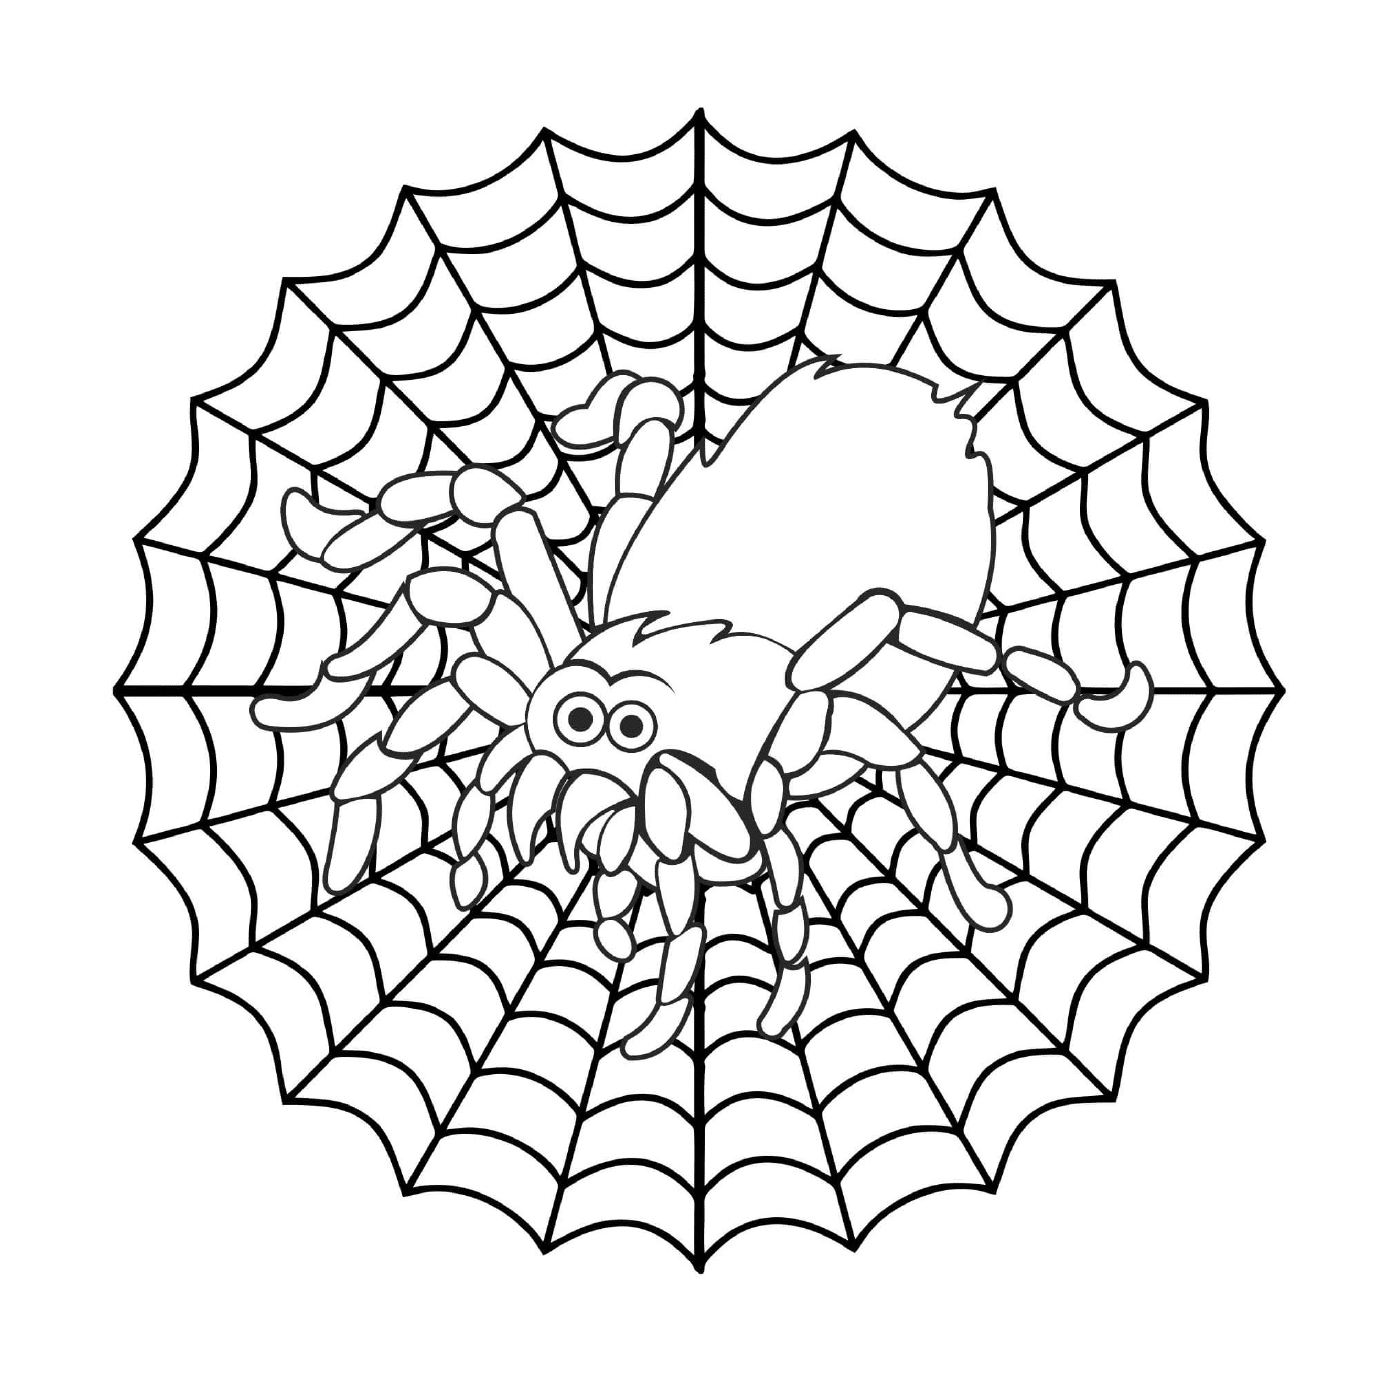  Eine Spinne auf einem Netz 